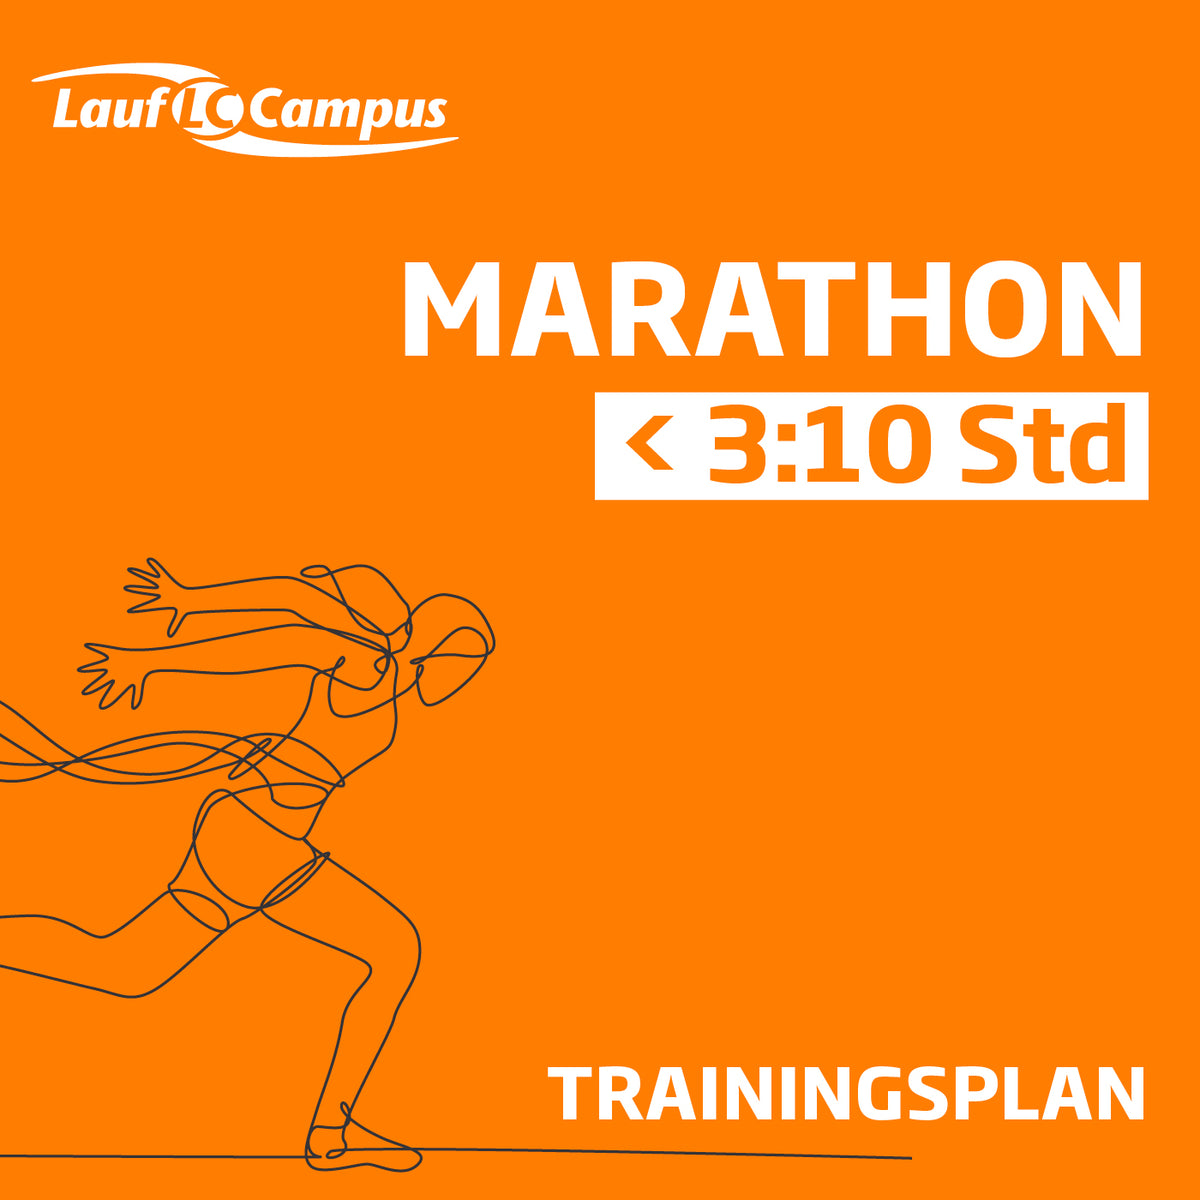 Trainingsplan für Marathon unter 3:10 Stunden